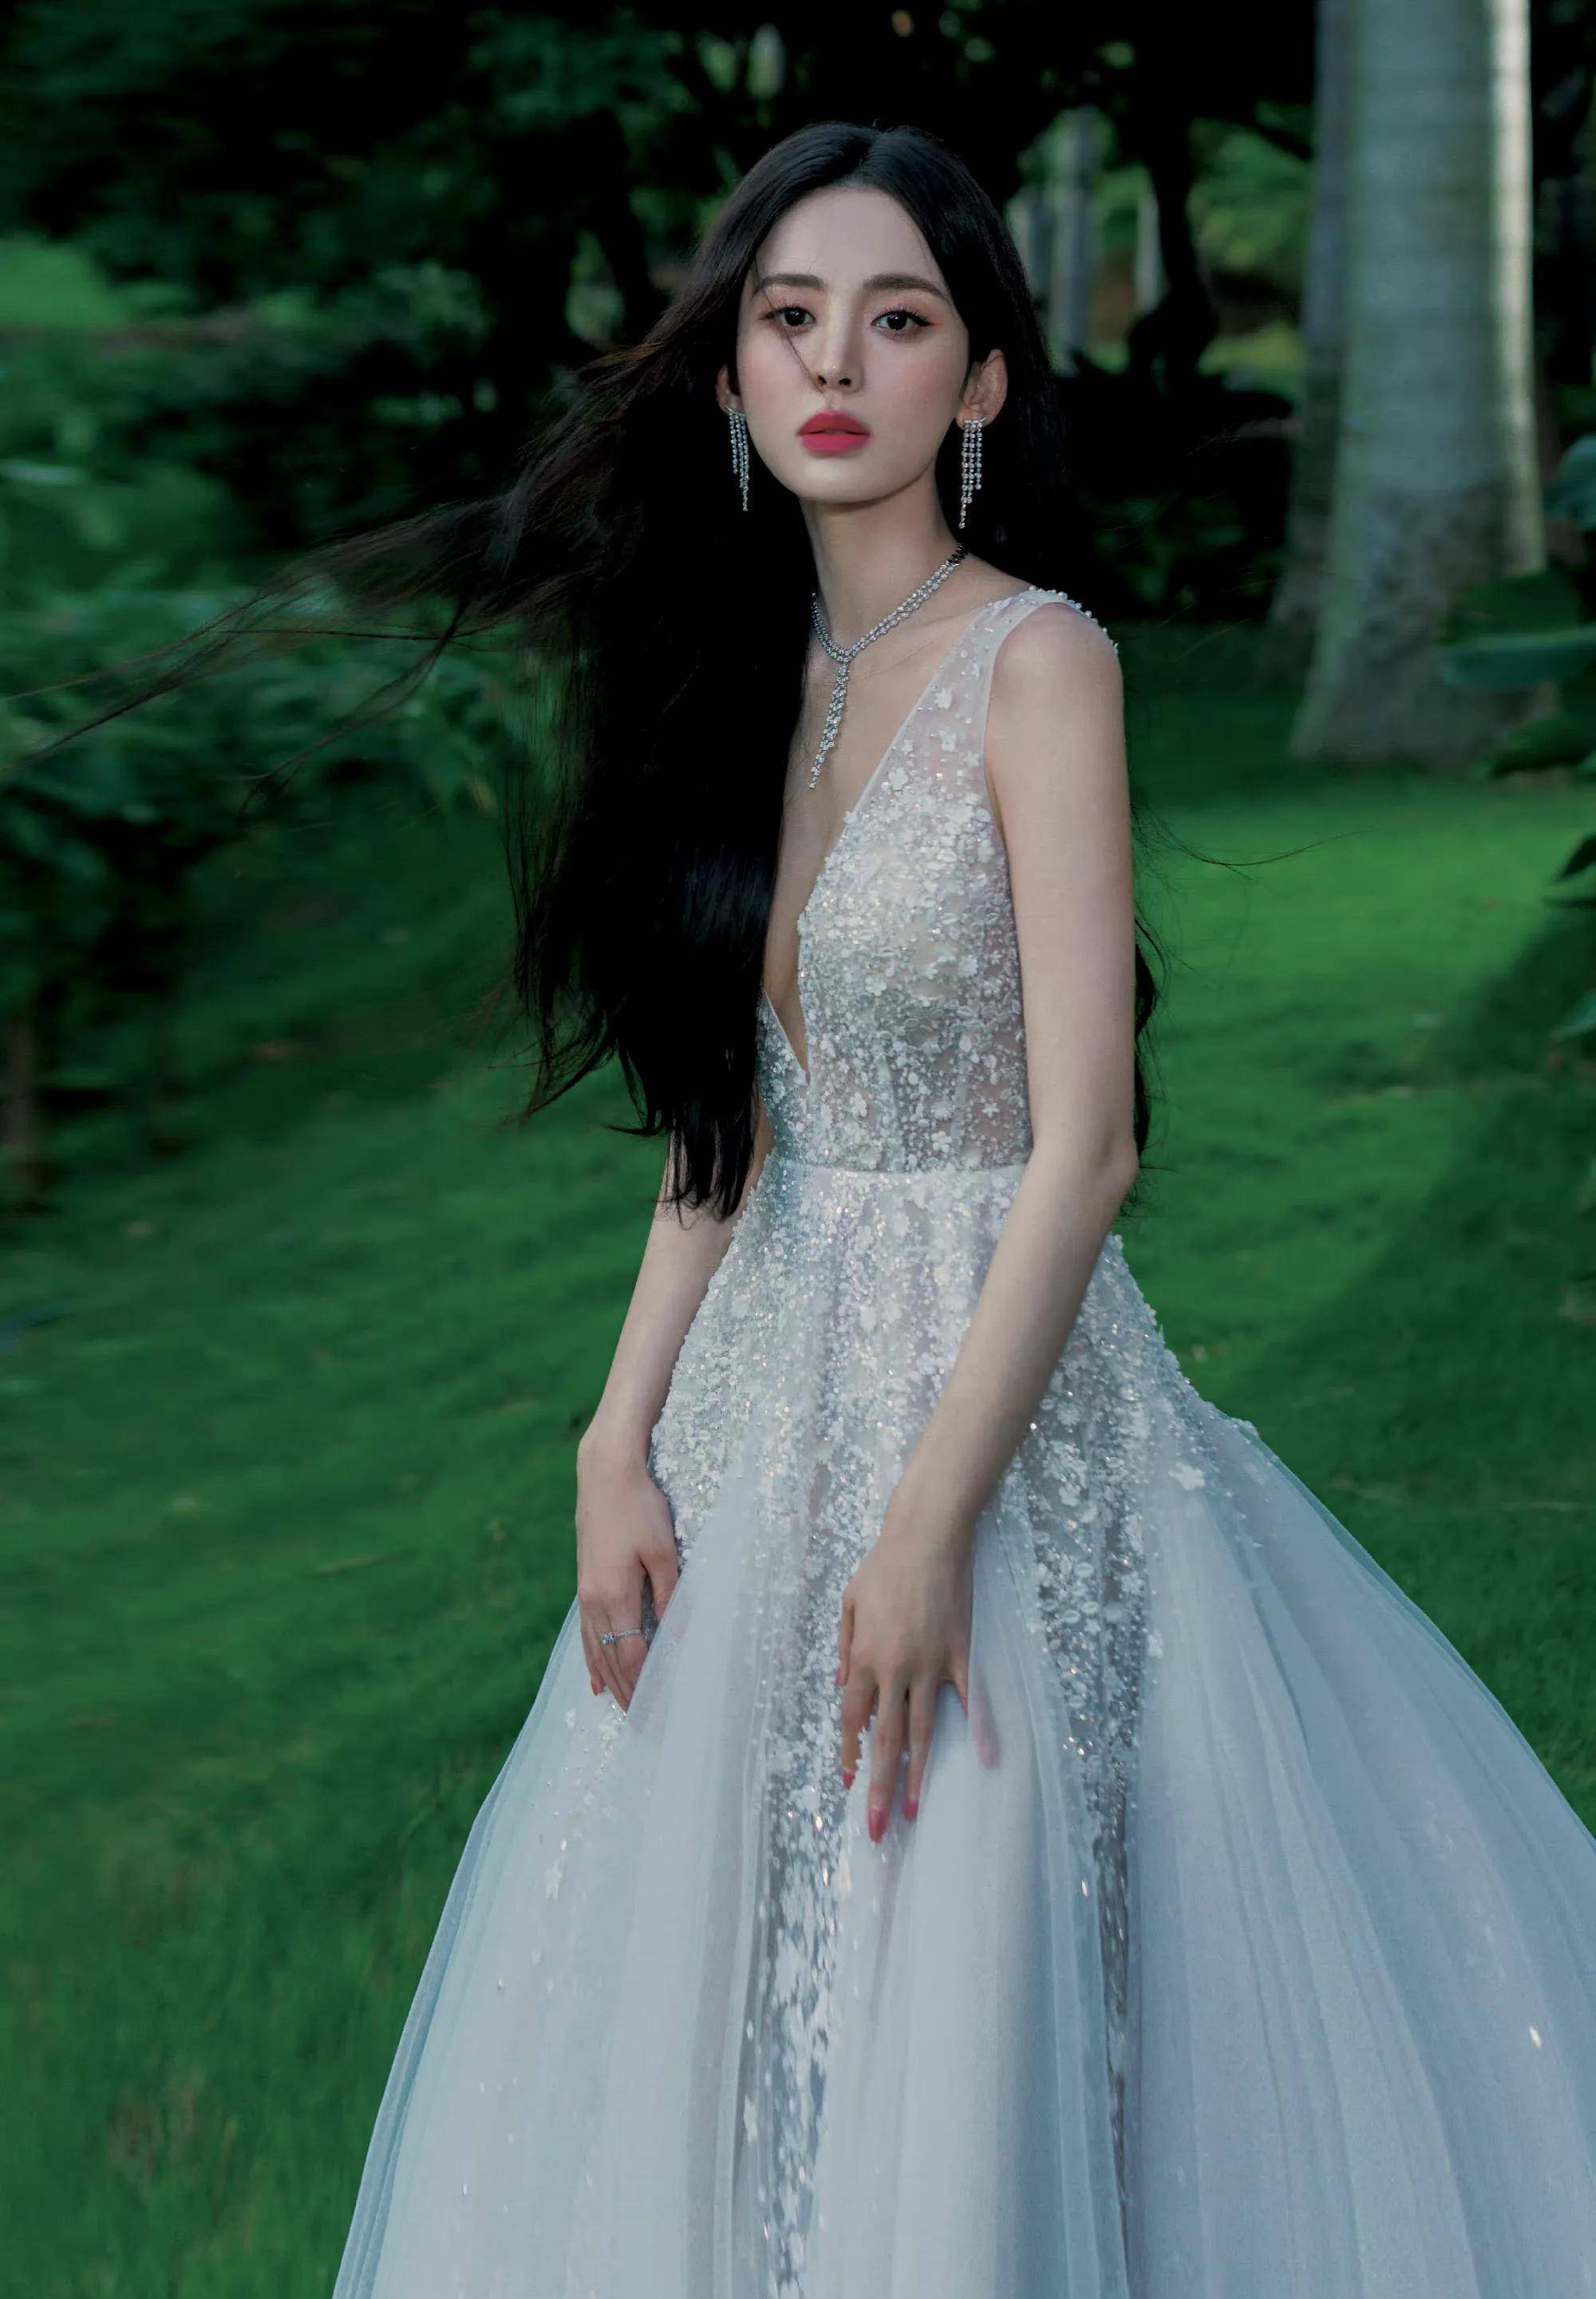 古力娜扎晶钻长裙造型,身材火辣,美艳迷人